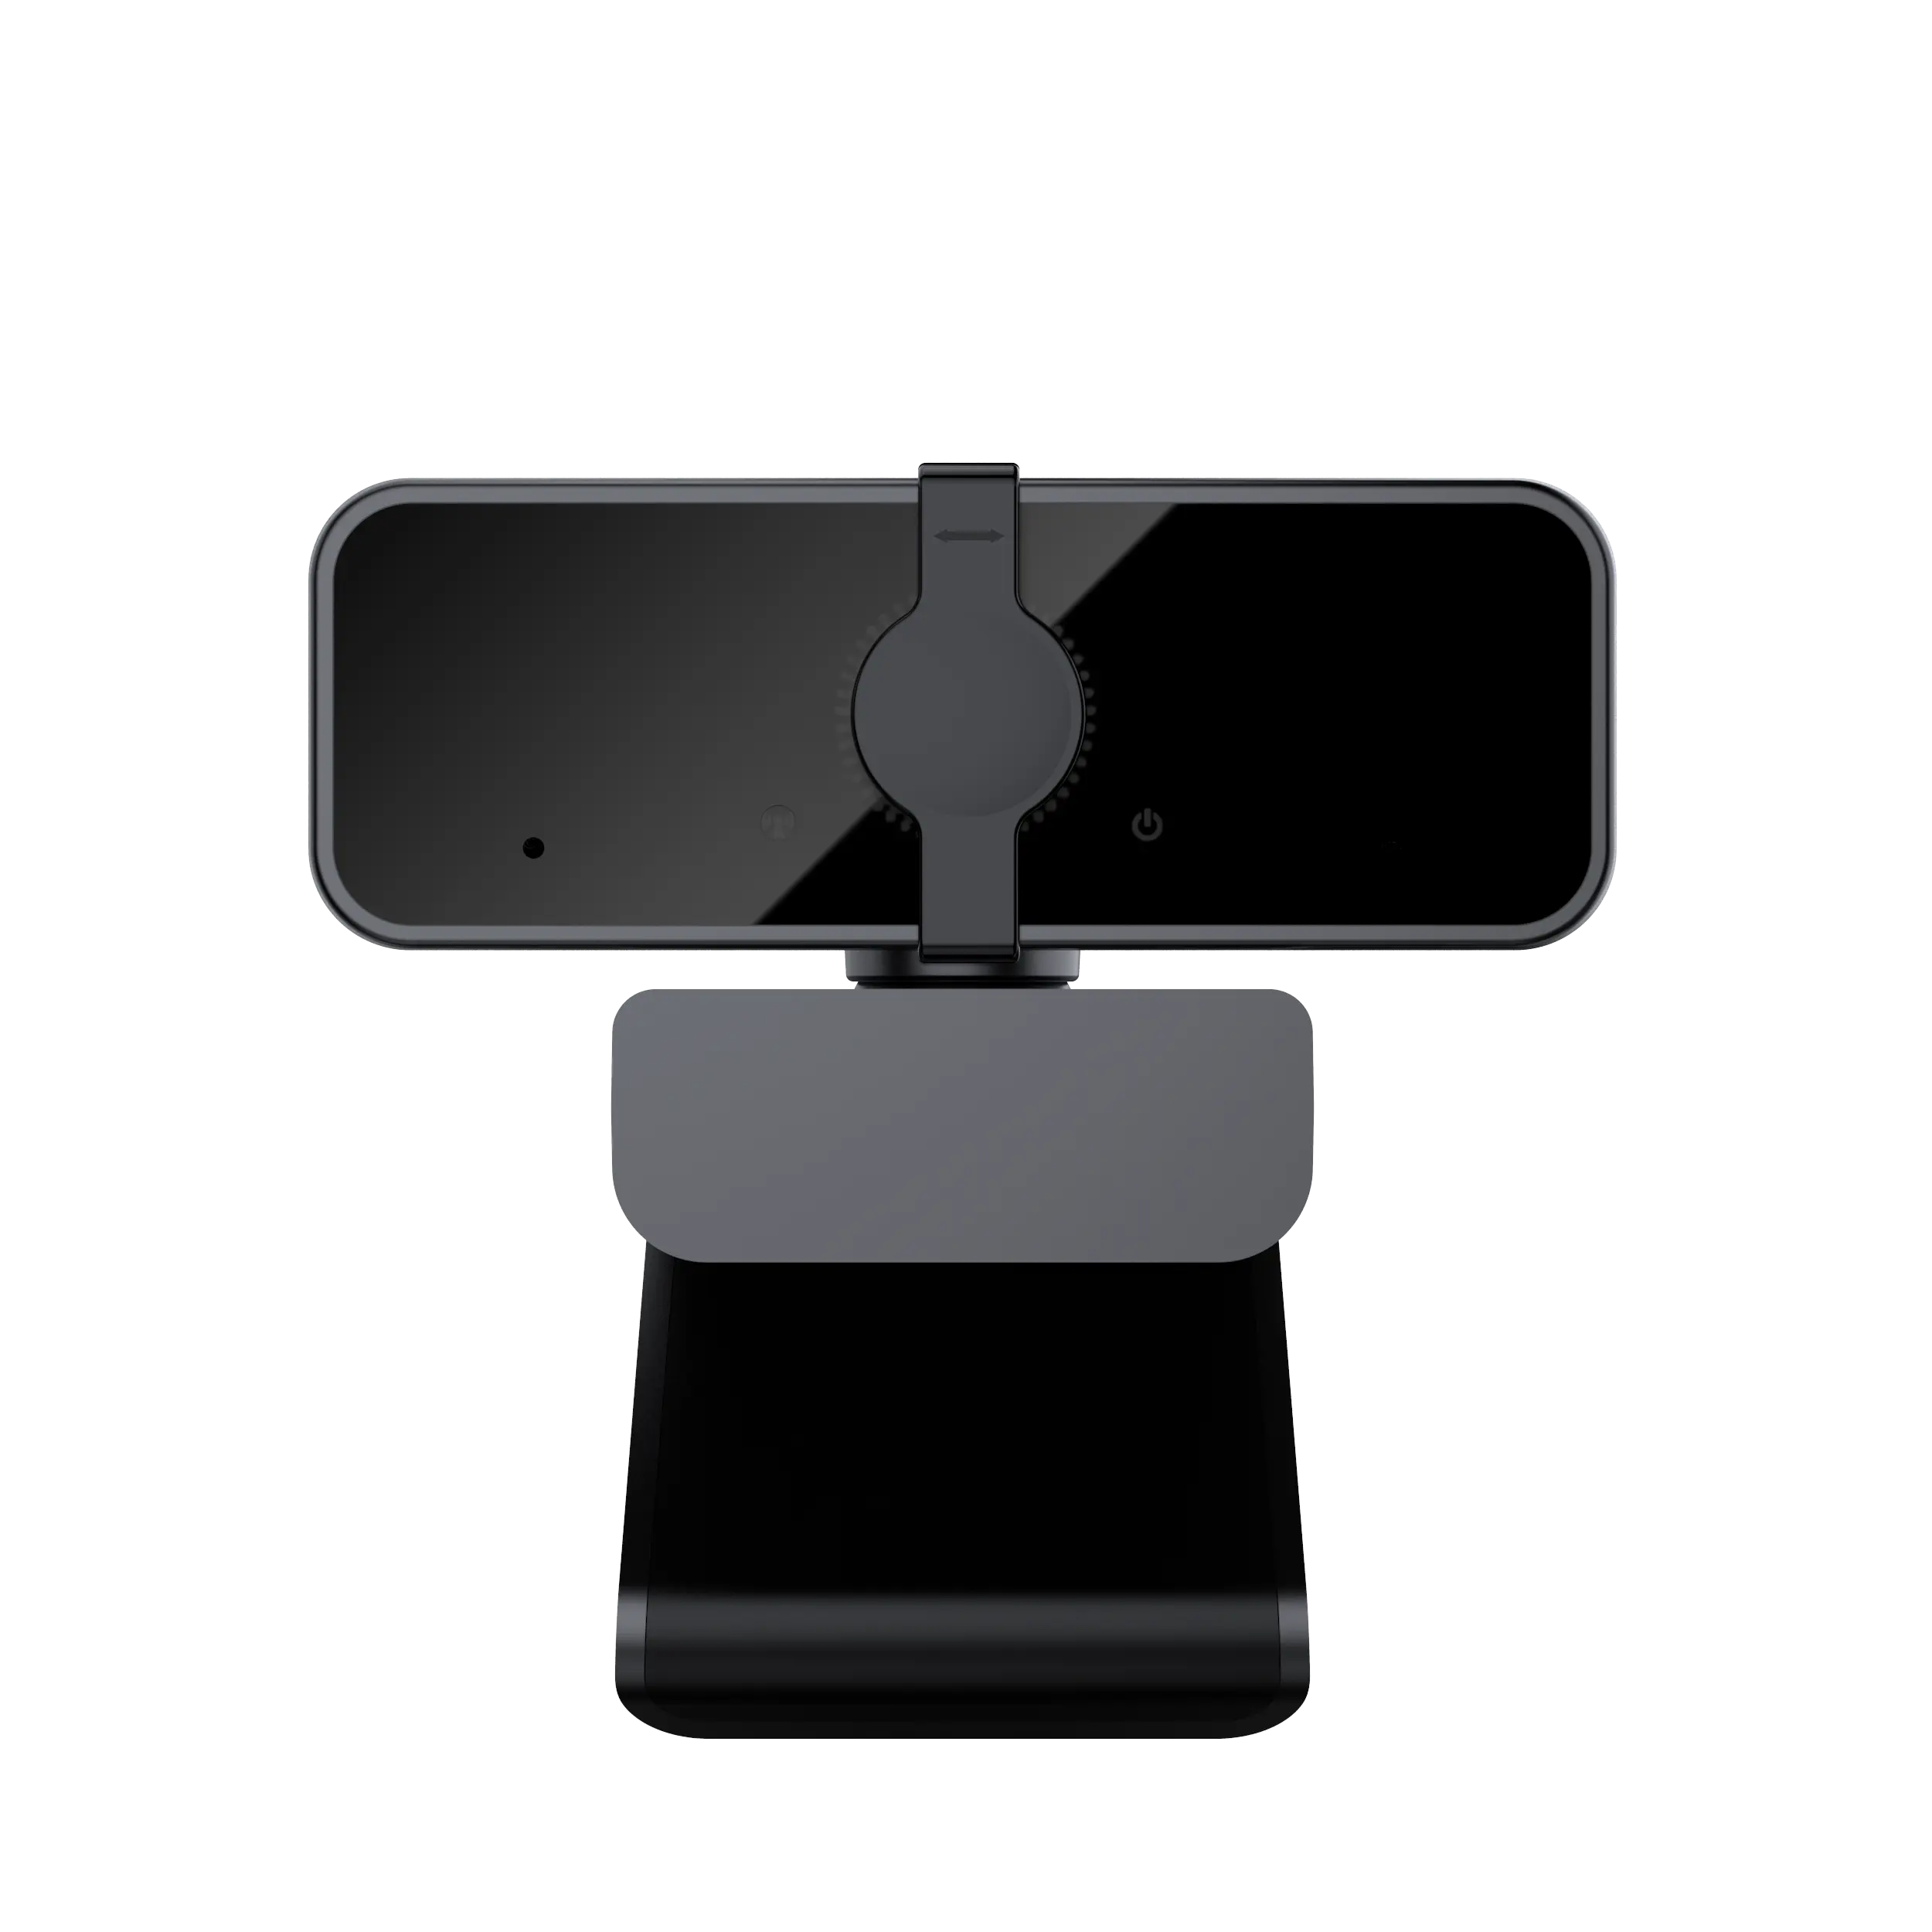 Bán hàng nóng giá rẻ 1080P USB Webcam máy ảnh cho Mac Máy tính xách tay với sự riêng tư Bìa Microphone Webcam